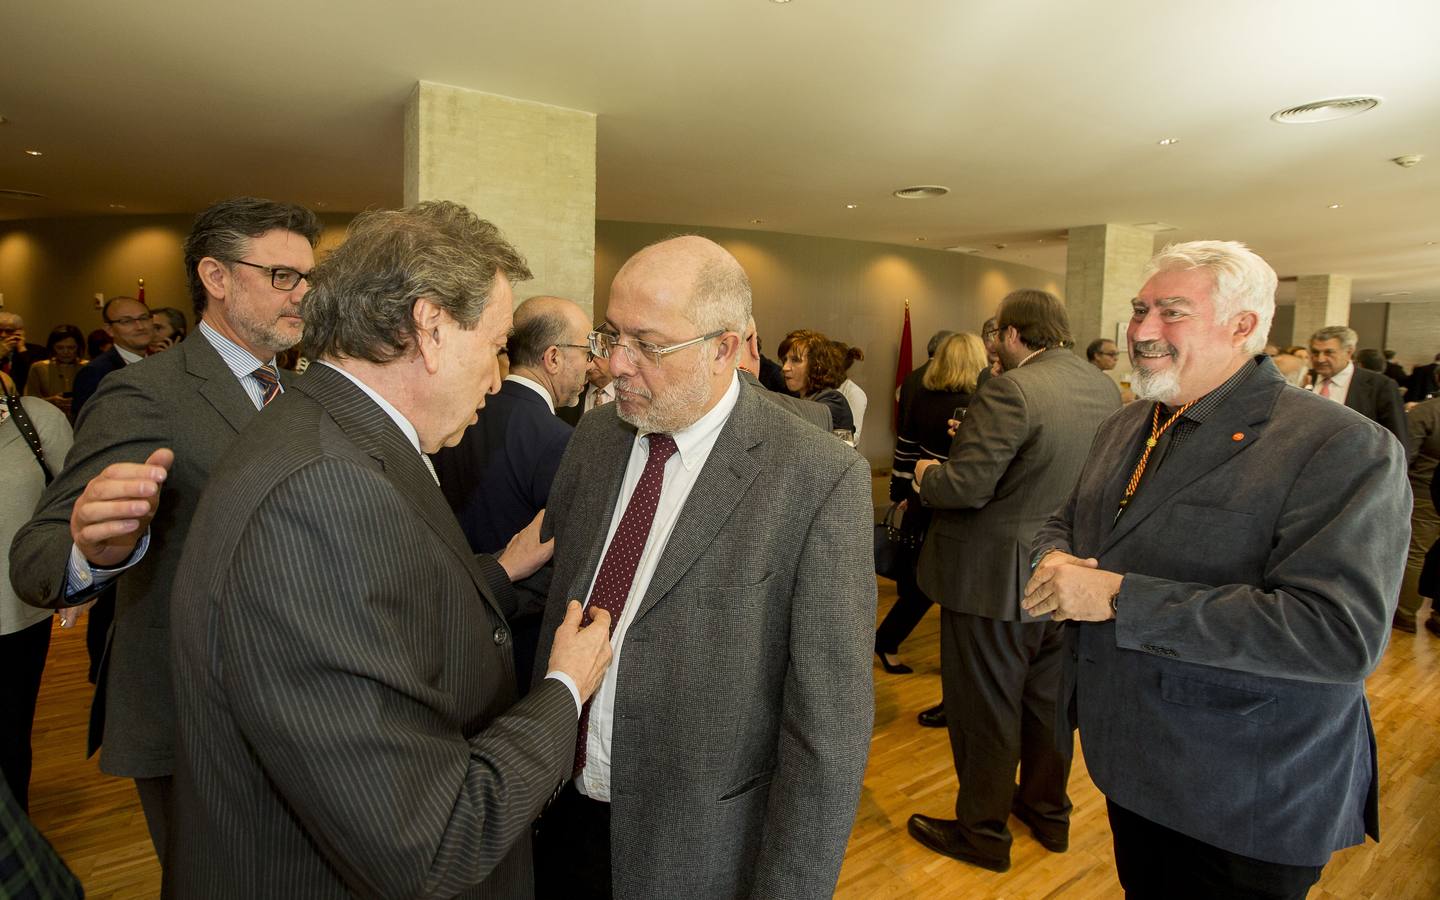 Fotos: XXXVI Aniversario del Estatuto de Autonomía de Castilla y León